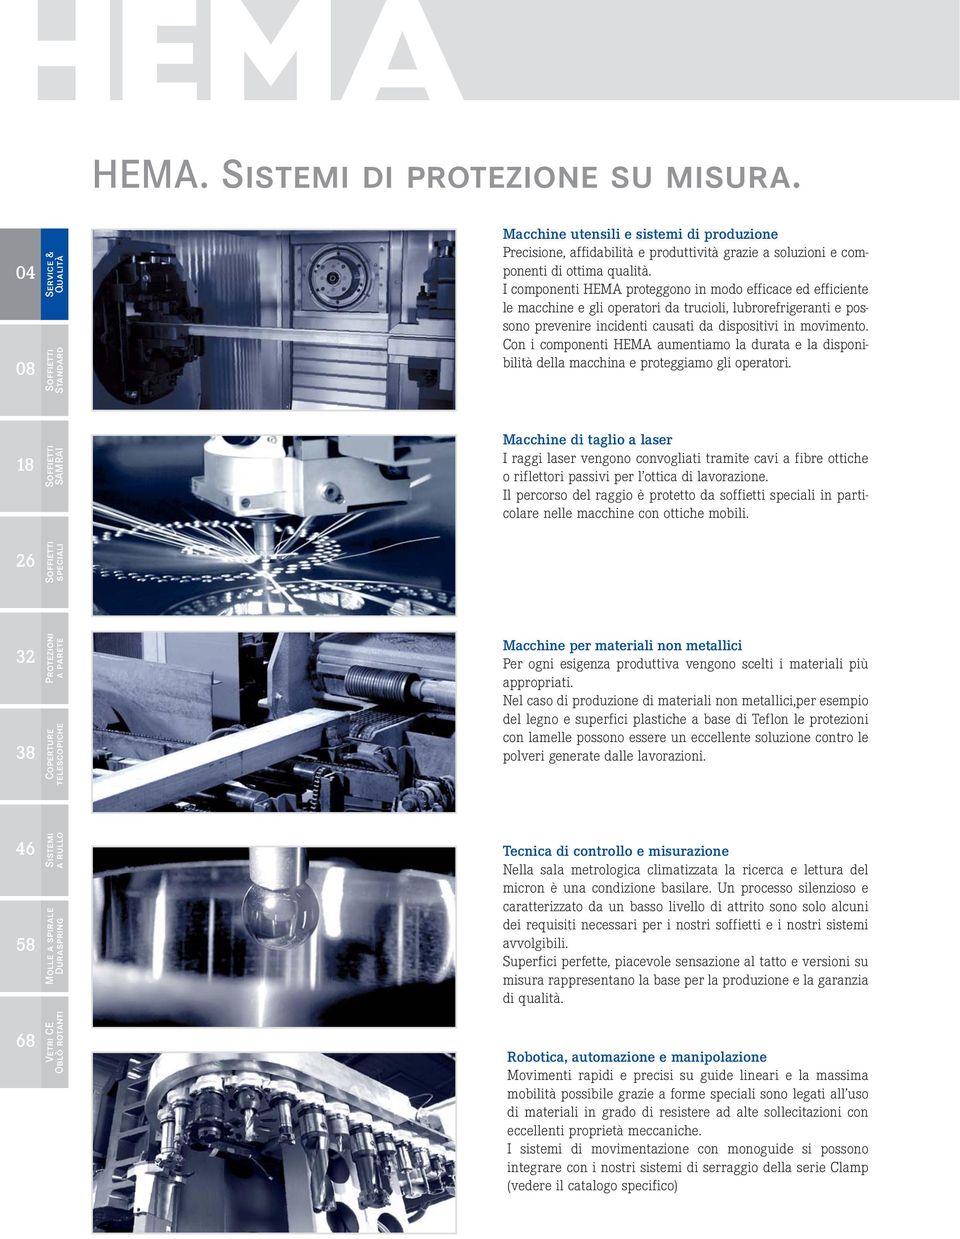 Con i componenti HEMA aumentiamo la durata e la disponibilità della macchina e proteggiamo gli operatori.